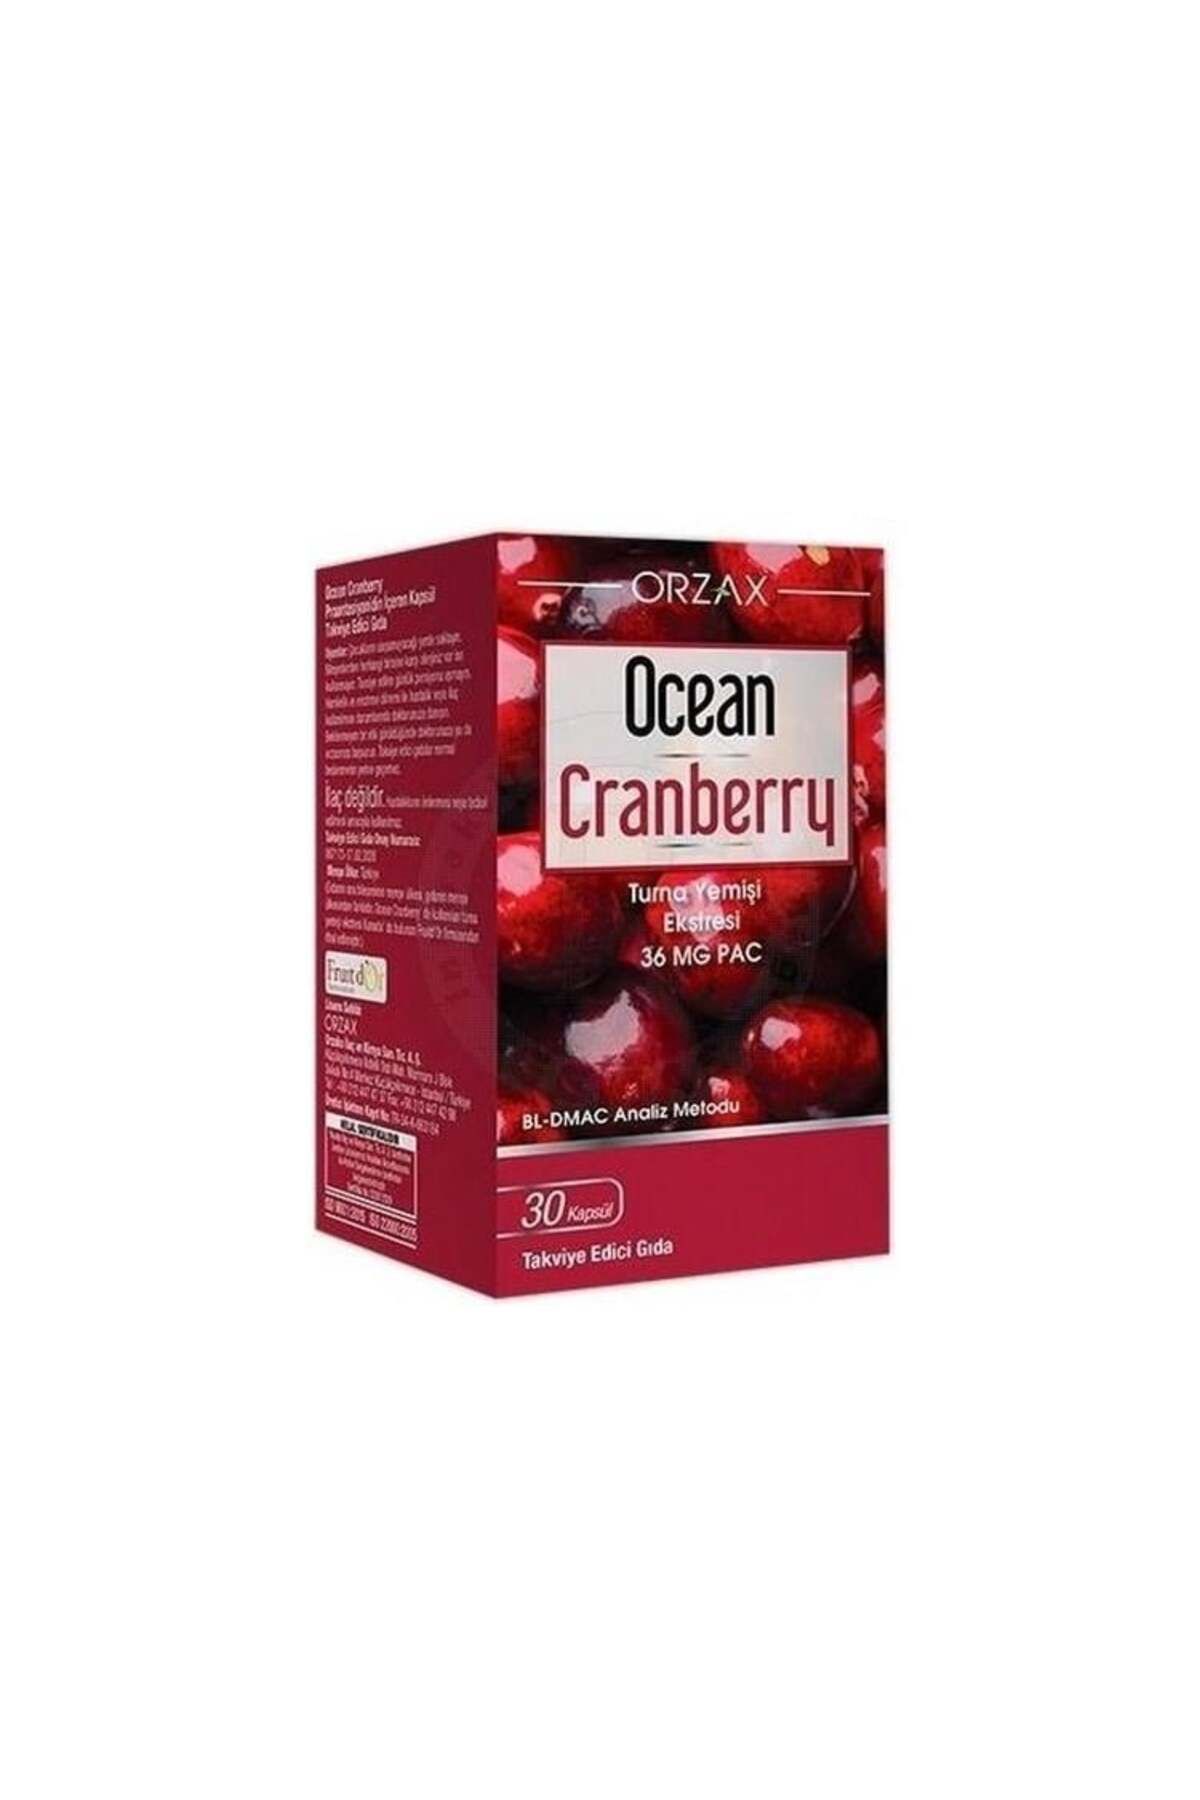 Ocean Cranberry Turna Yemişi Ekstresi 36 mg Pac 30Tablet Turna Yemişi İçeren Takviye Edici Gıda.orzx